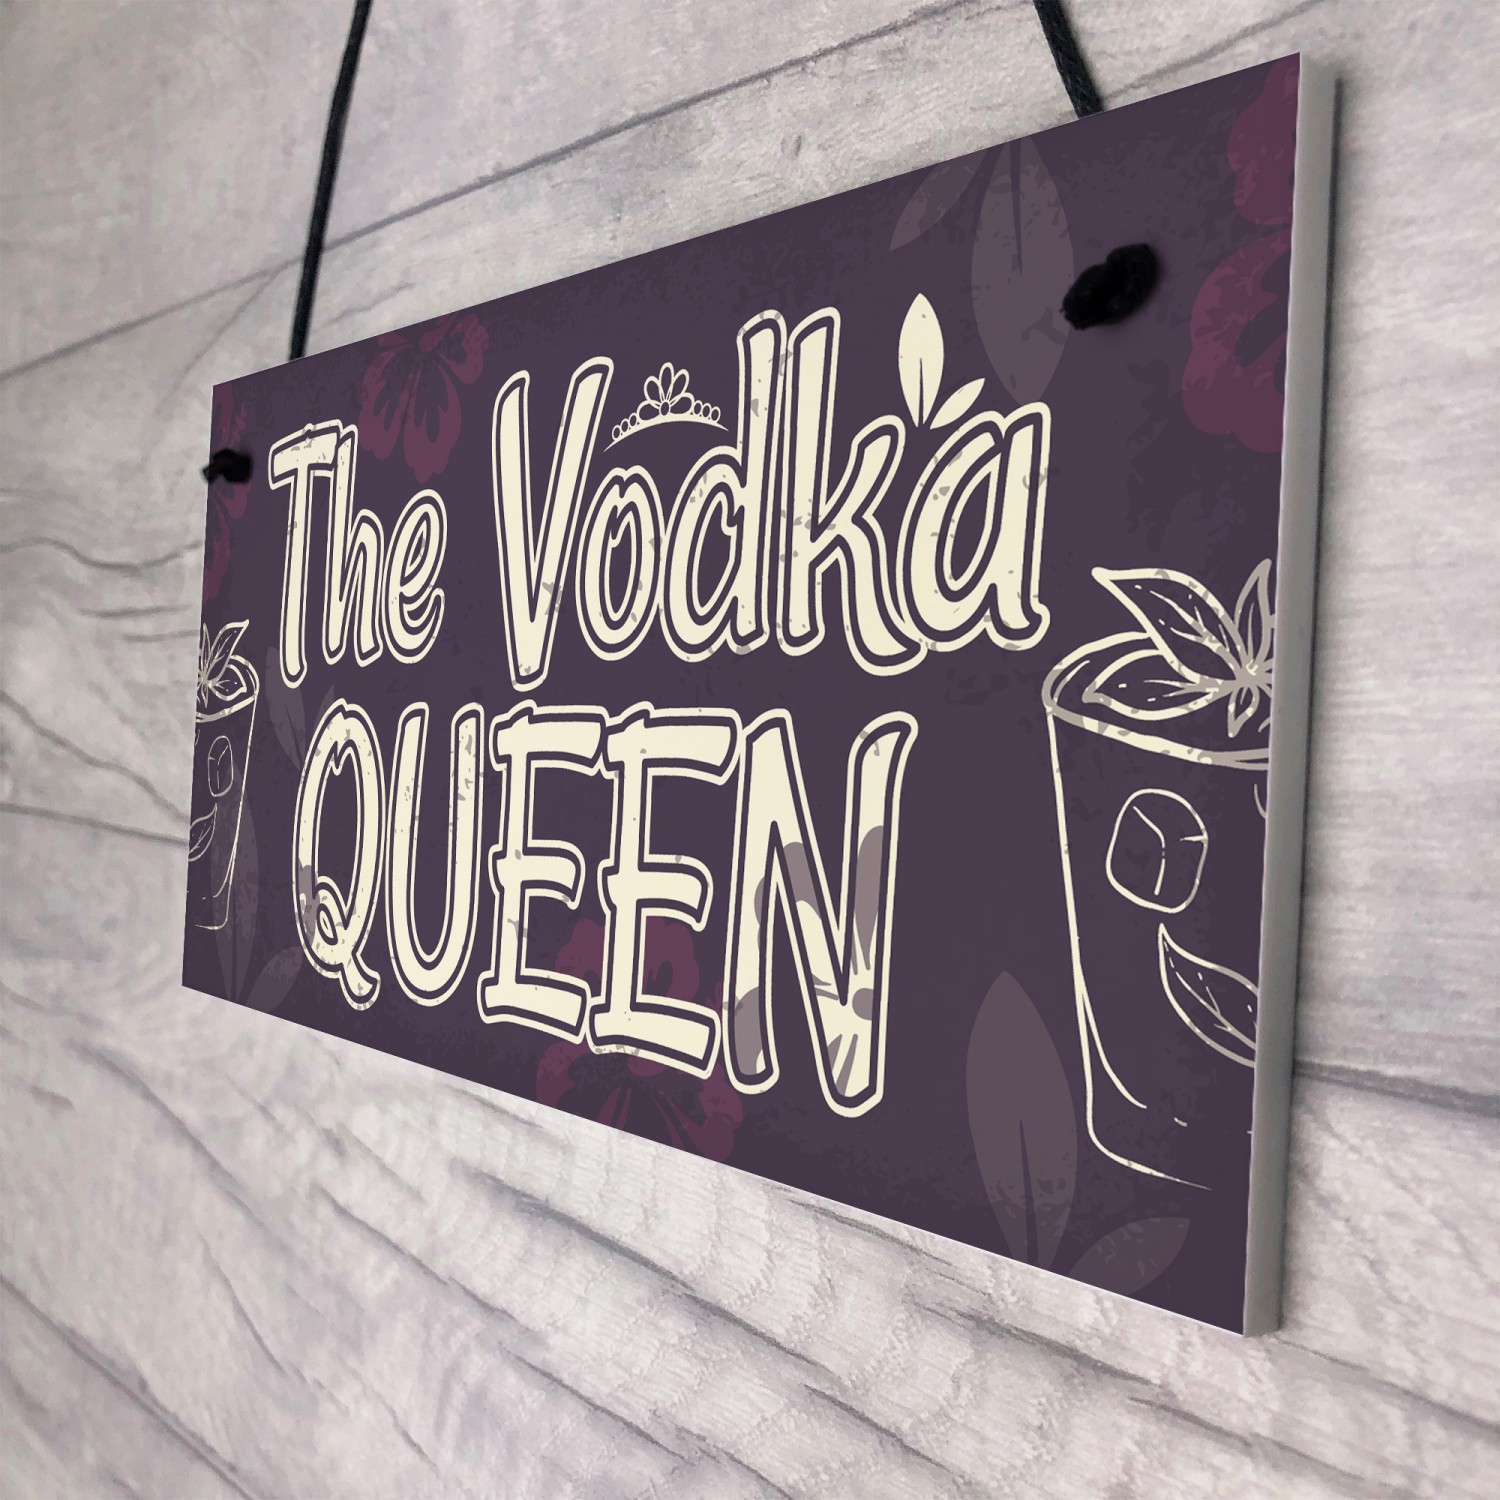 Vodka_Queen